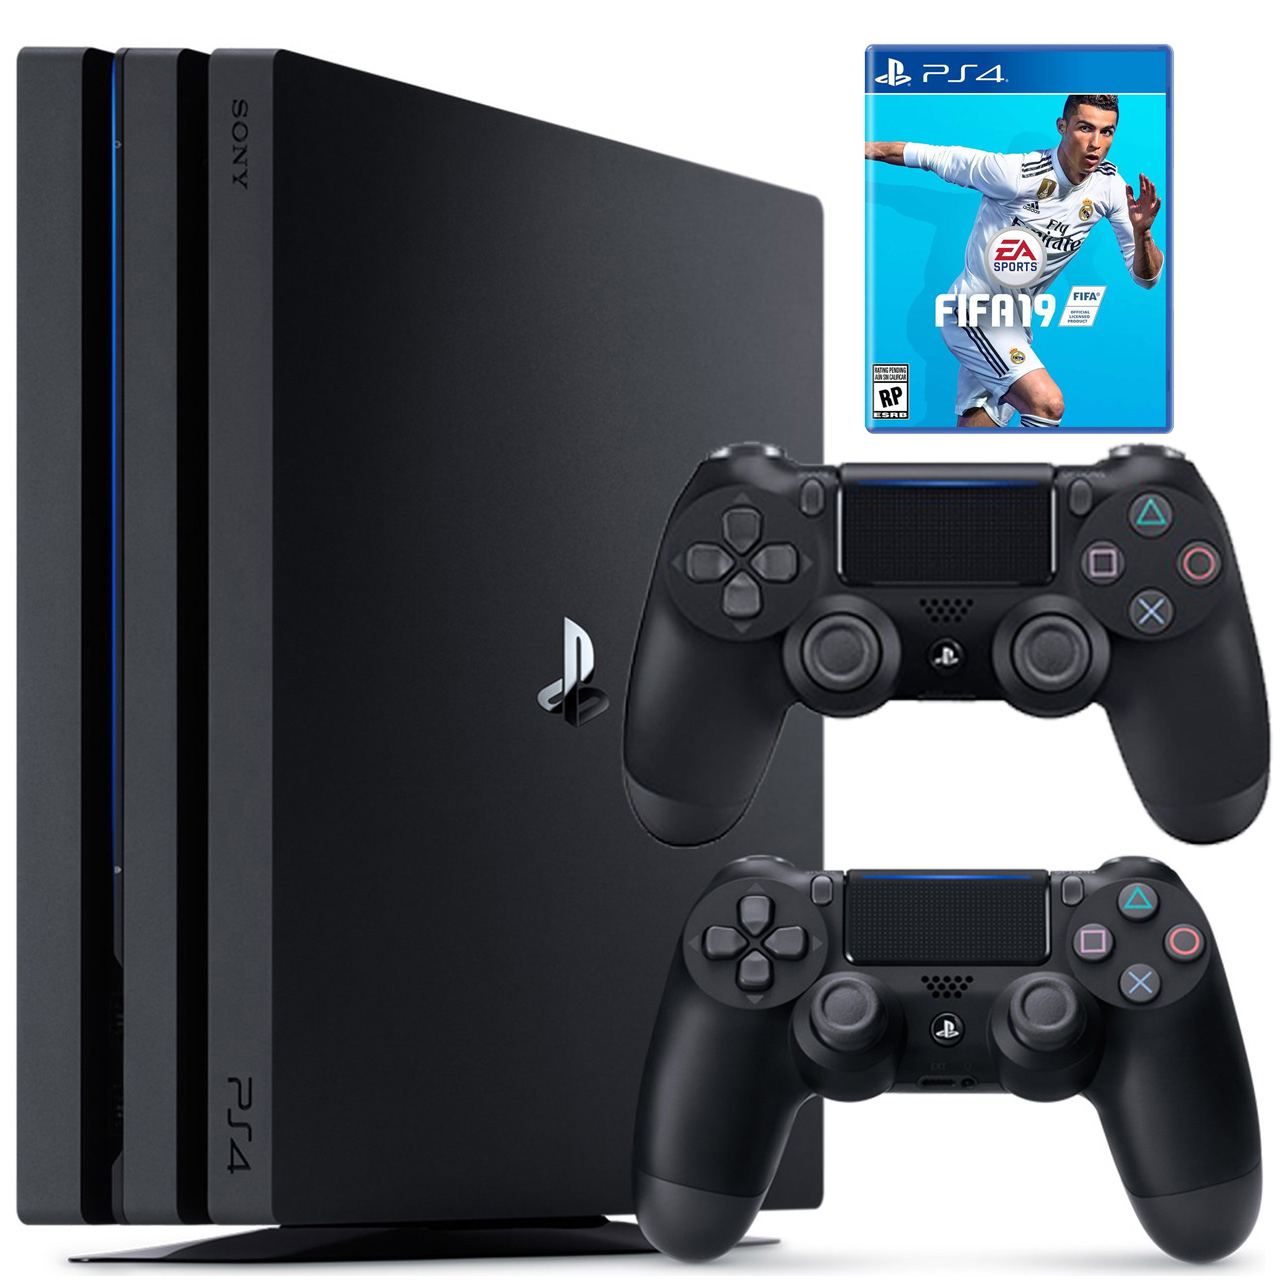 مجموعه کنسول بازی سونی مدل Playstation 4 Pro 2018 ریجن 2 کد CUH -7216B ظرفیت 1 ترابایت